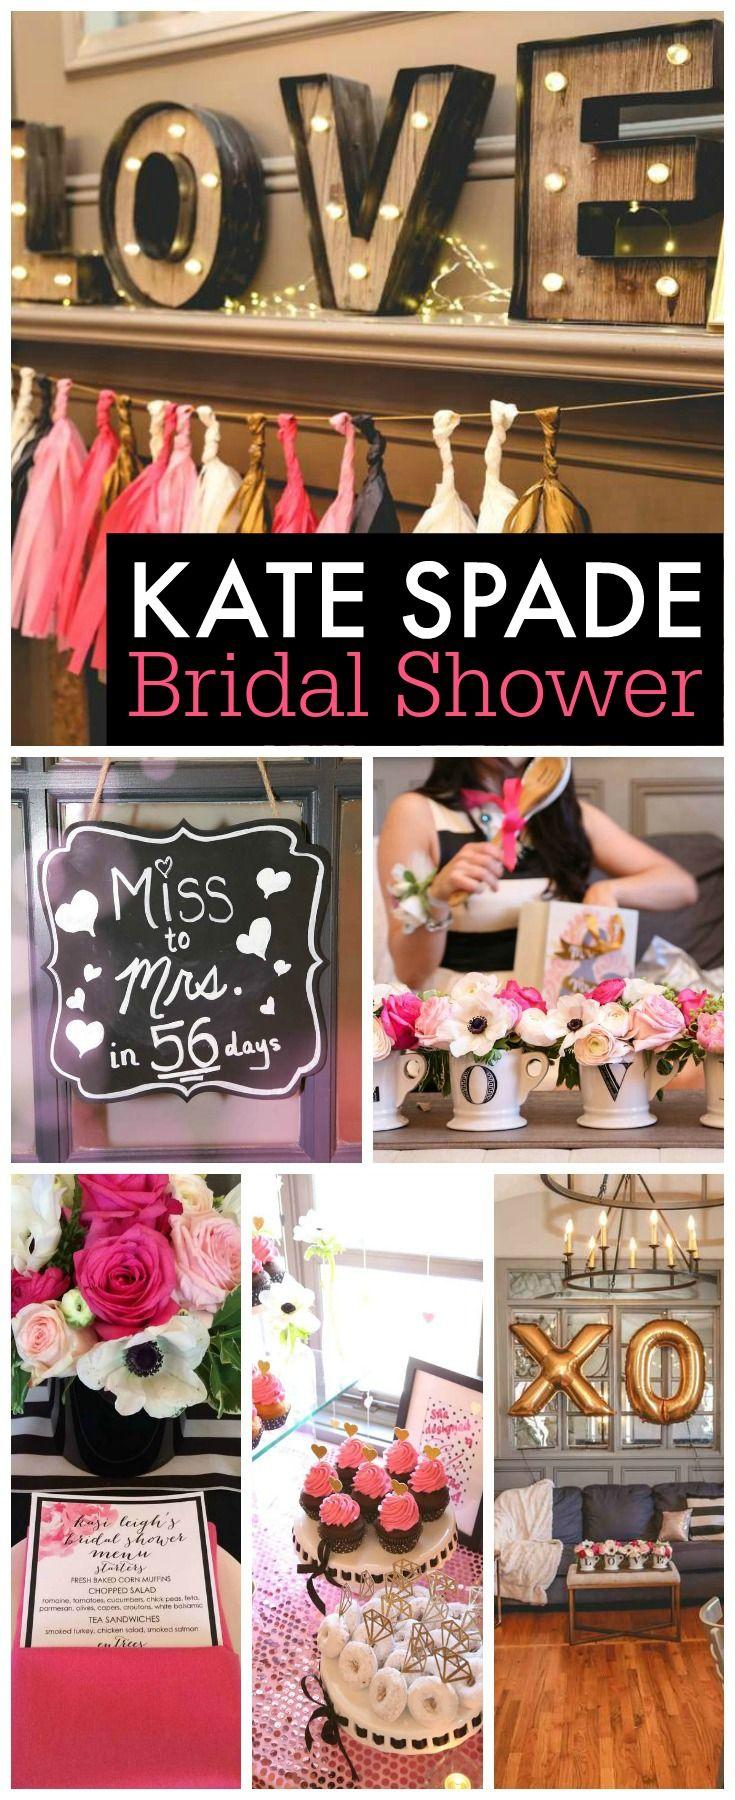 زفاف - Black, White, Pink & Gold / Bridal/Wedding Shower "Kasi's Kate Spade Inspired Bridal Shower"